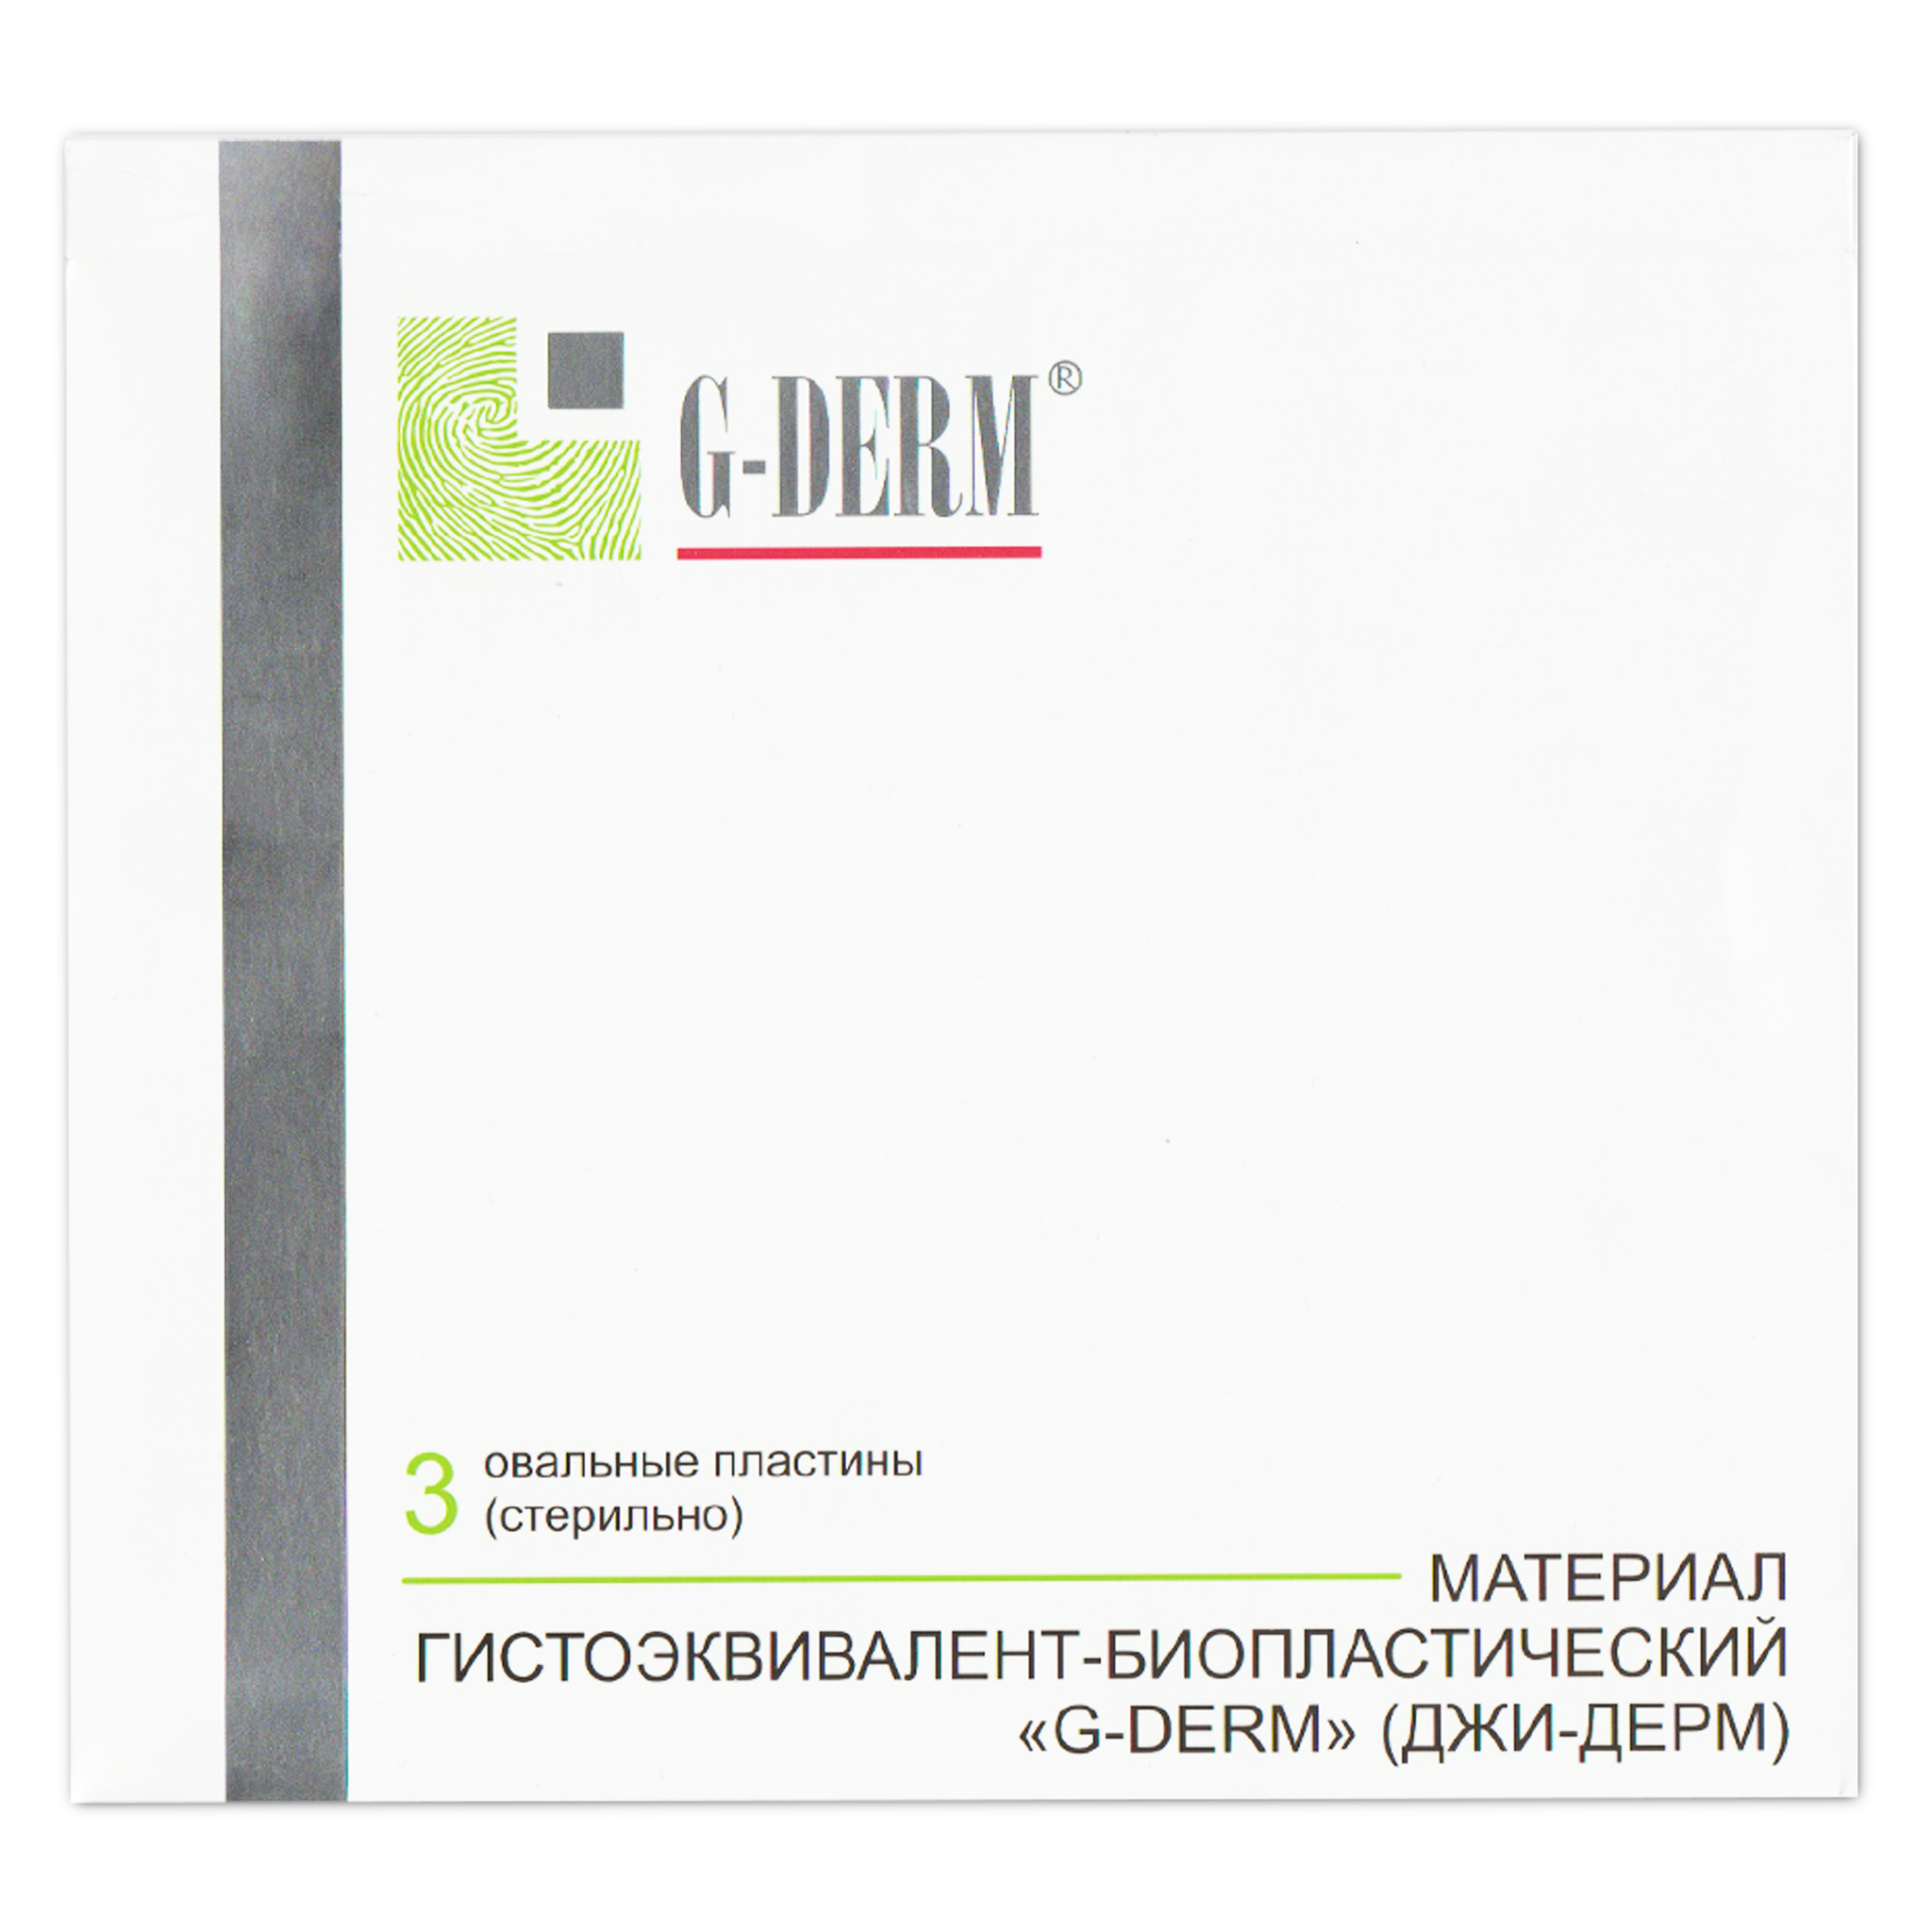 G derm купить. Джи-дерм (g-Derm) - материал гистоэквивалент-биопластический «биокожа». ГИАВИТ G-Derm. Косметика g-Derm профессионал.